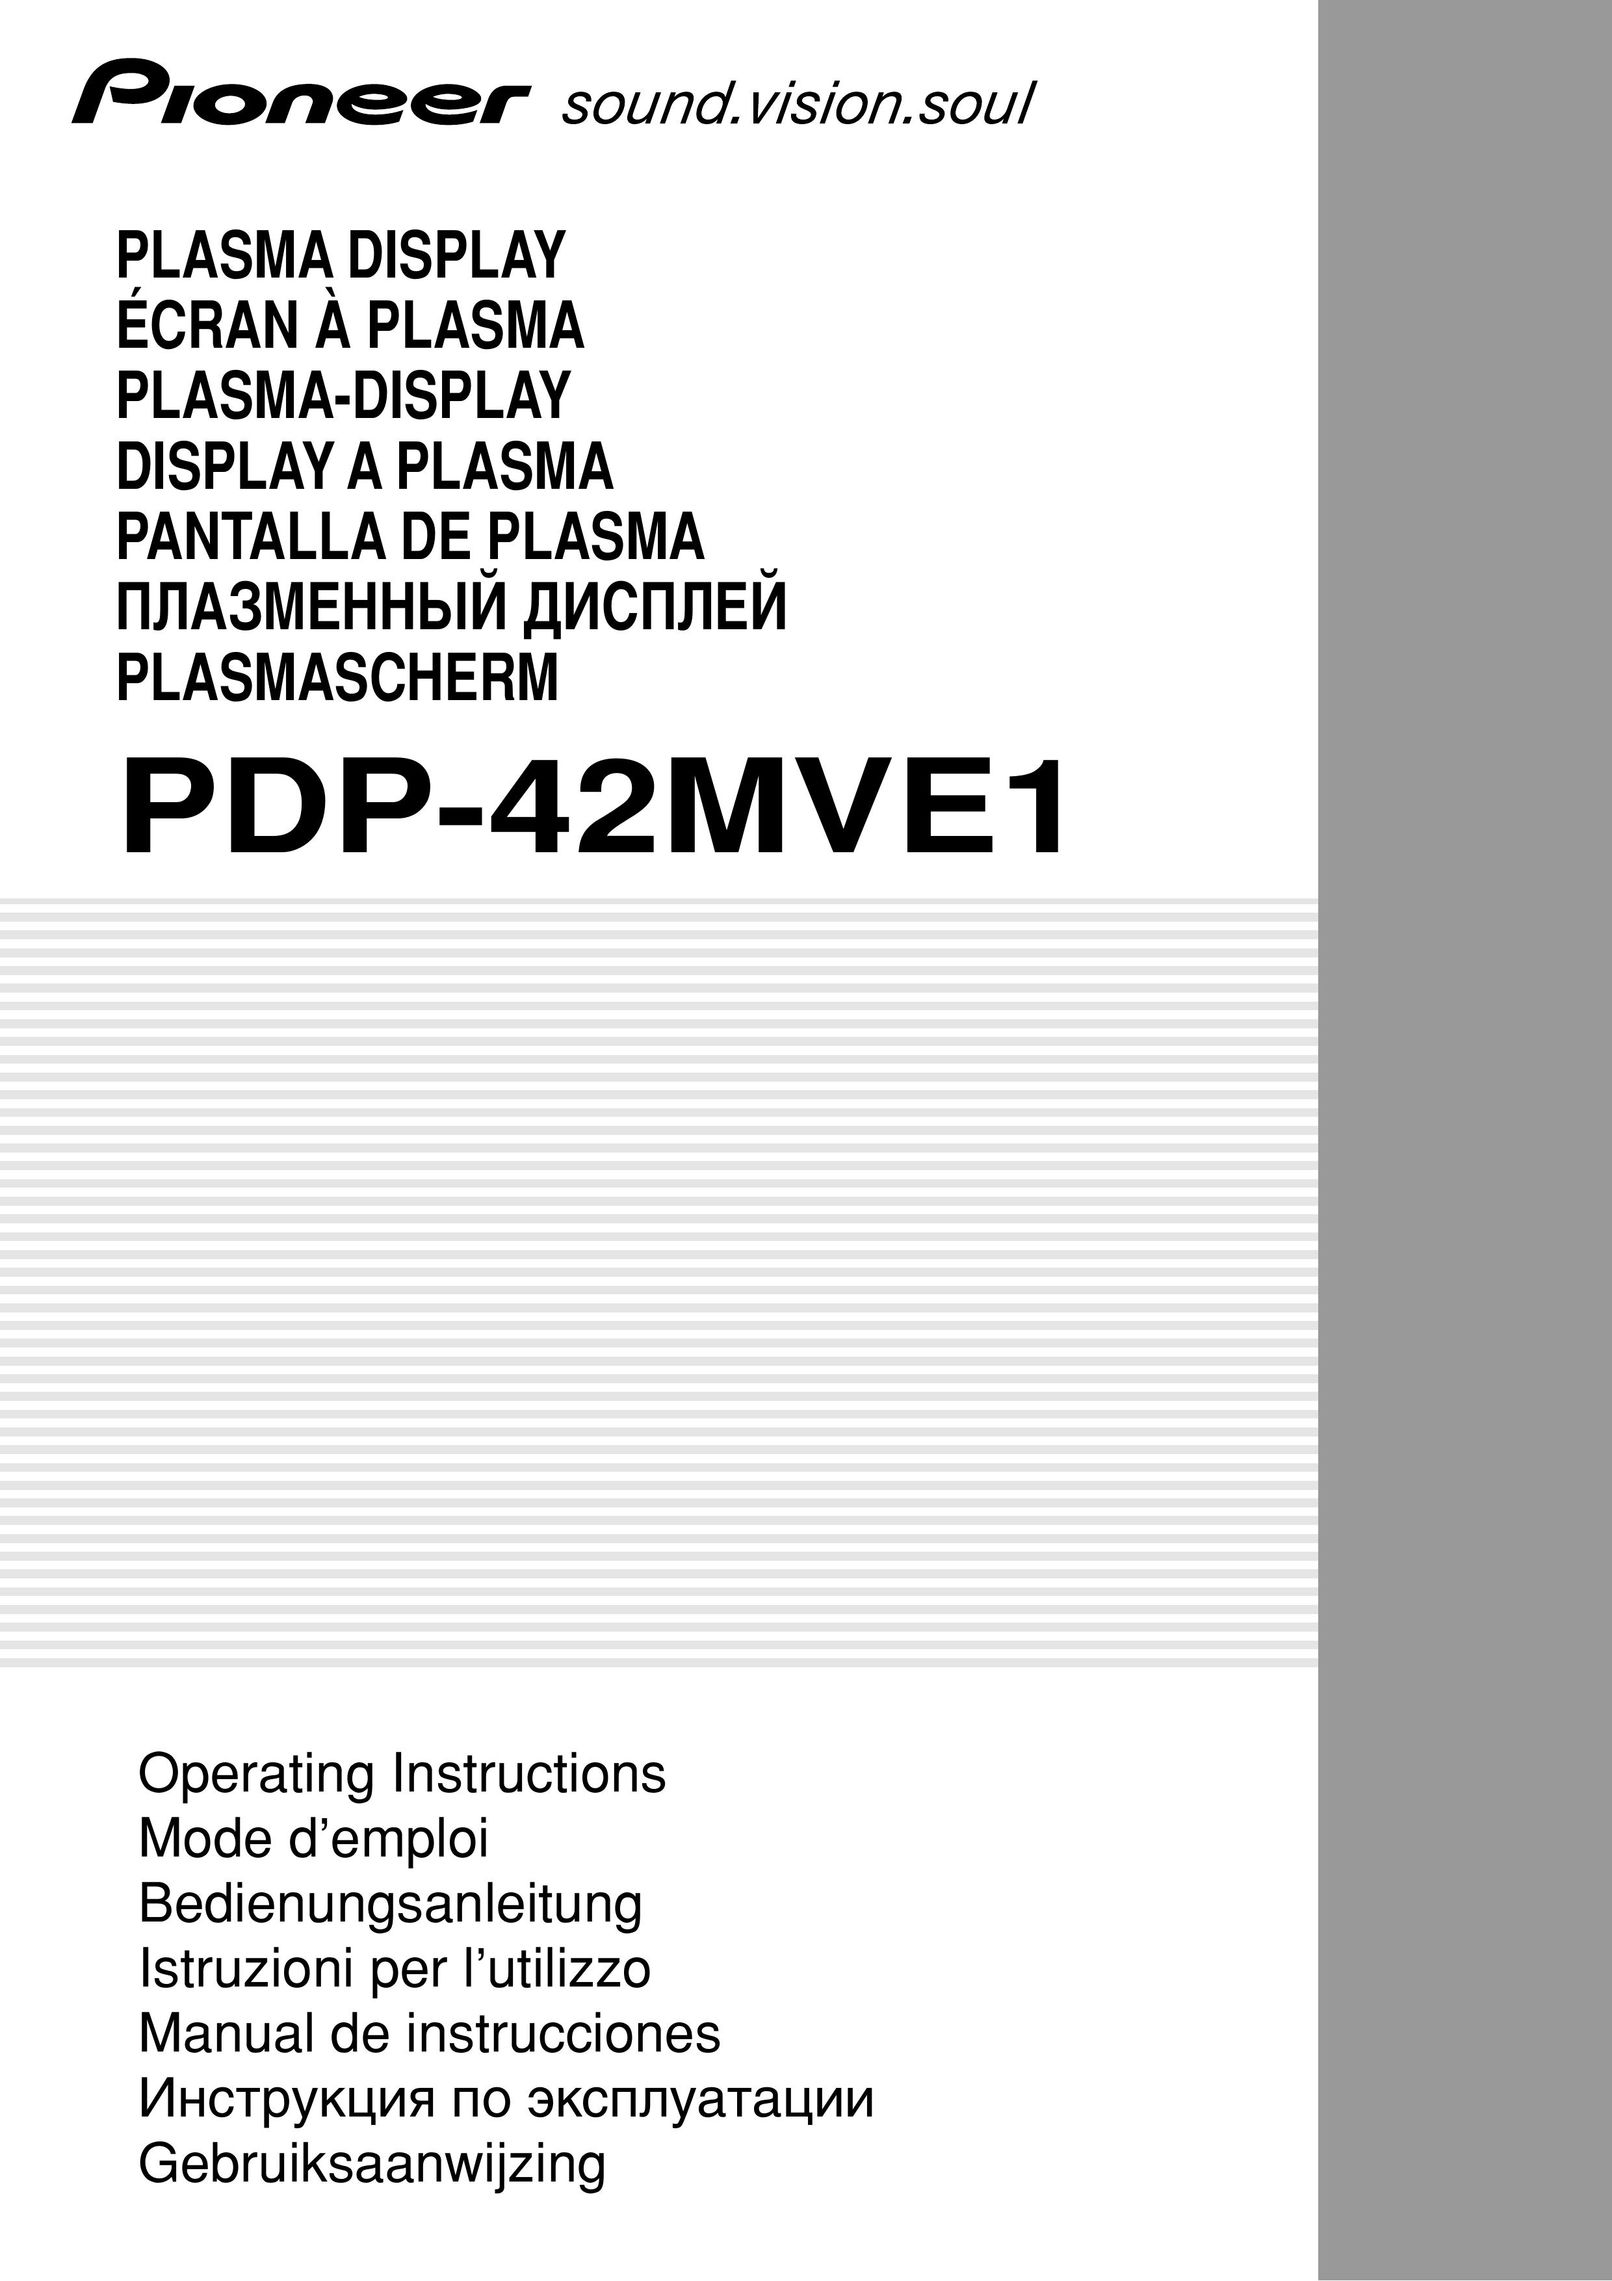 Pioneer PLASMA DISPLAY Turntable User Manual